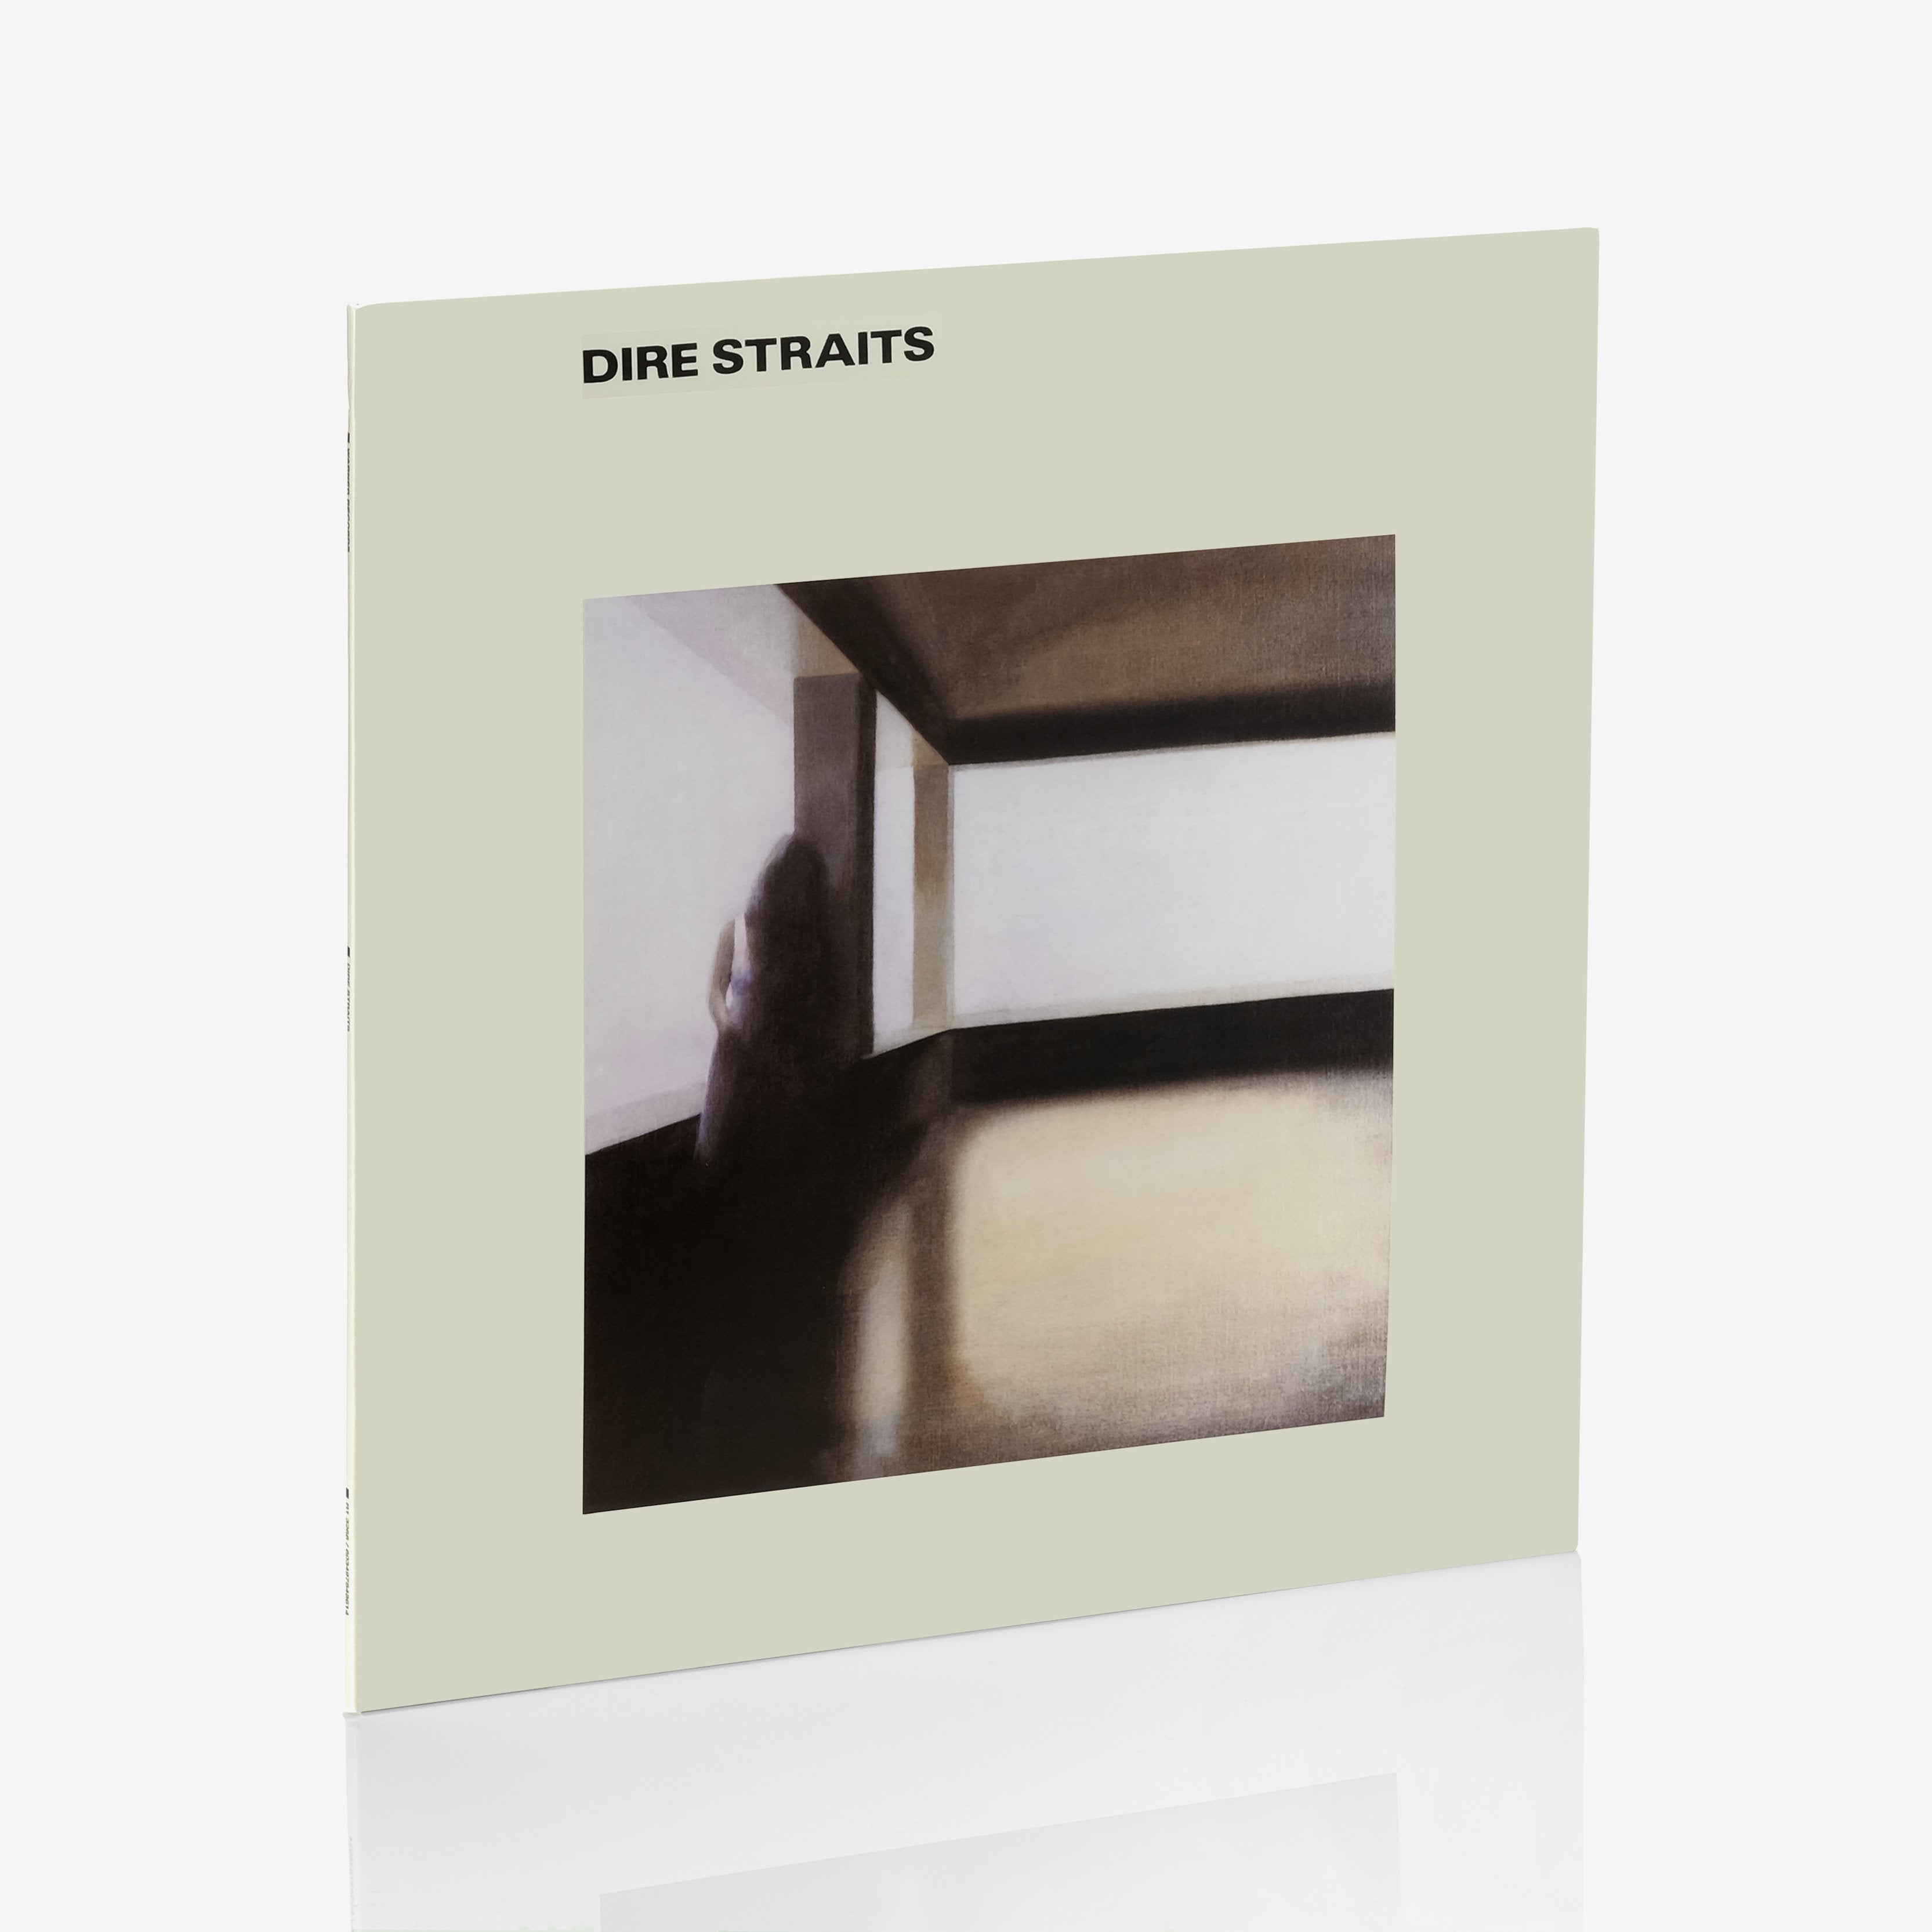 Dire Straits - Dire Straits (SYEOR Exclusive) LP Vinyl Record